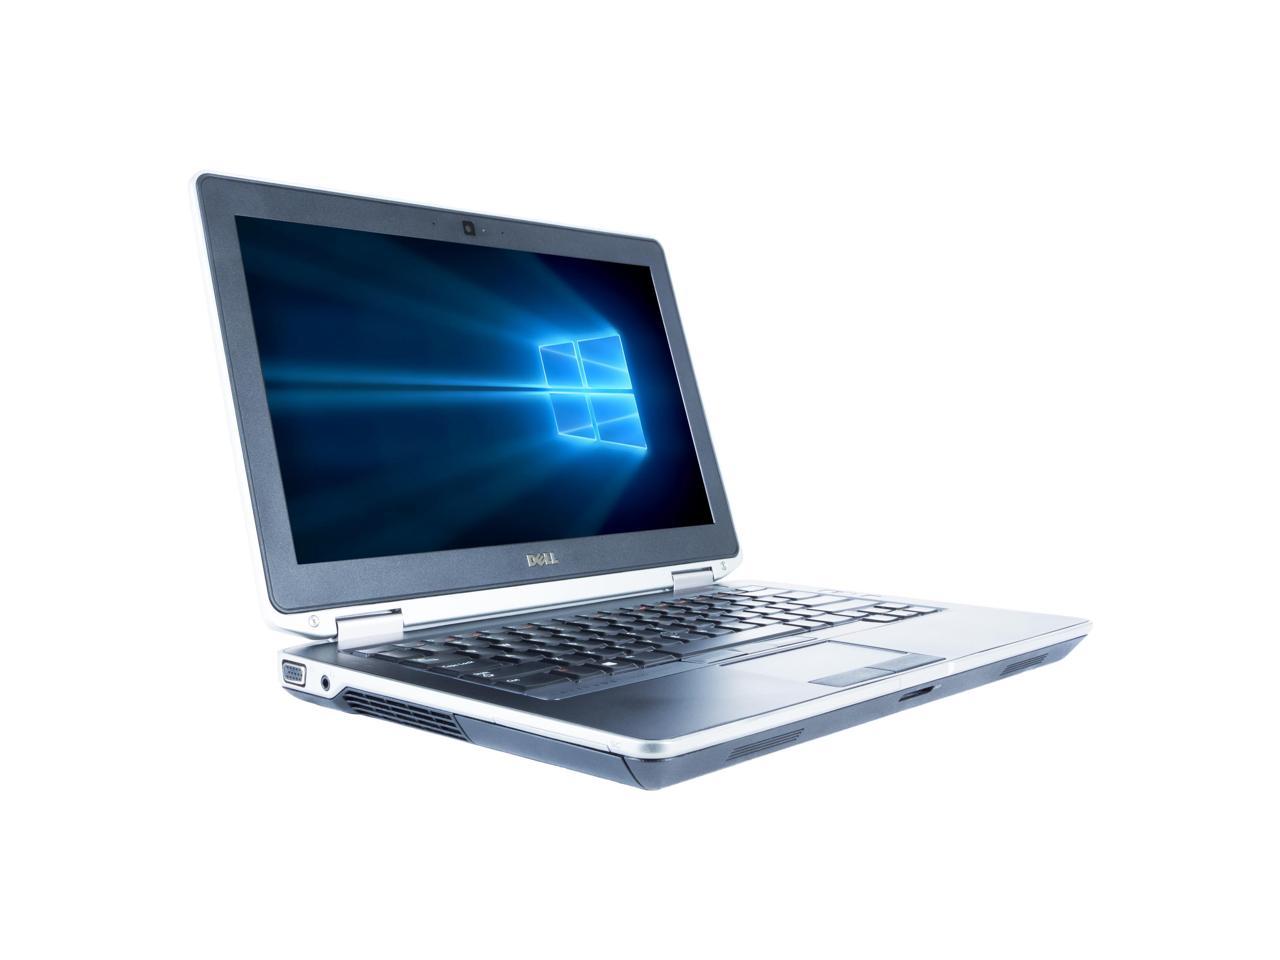 Dell Grade A Latitude E6330 13.3" Laptop, Intel Core I5-3320M up to 3.3G, 12G DDR3, 500G, DVD, USB 3.0, VGA, miniHDMI, Windows 10 Pro 64 bits Multi-language(EN/ES)